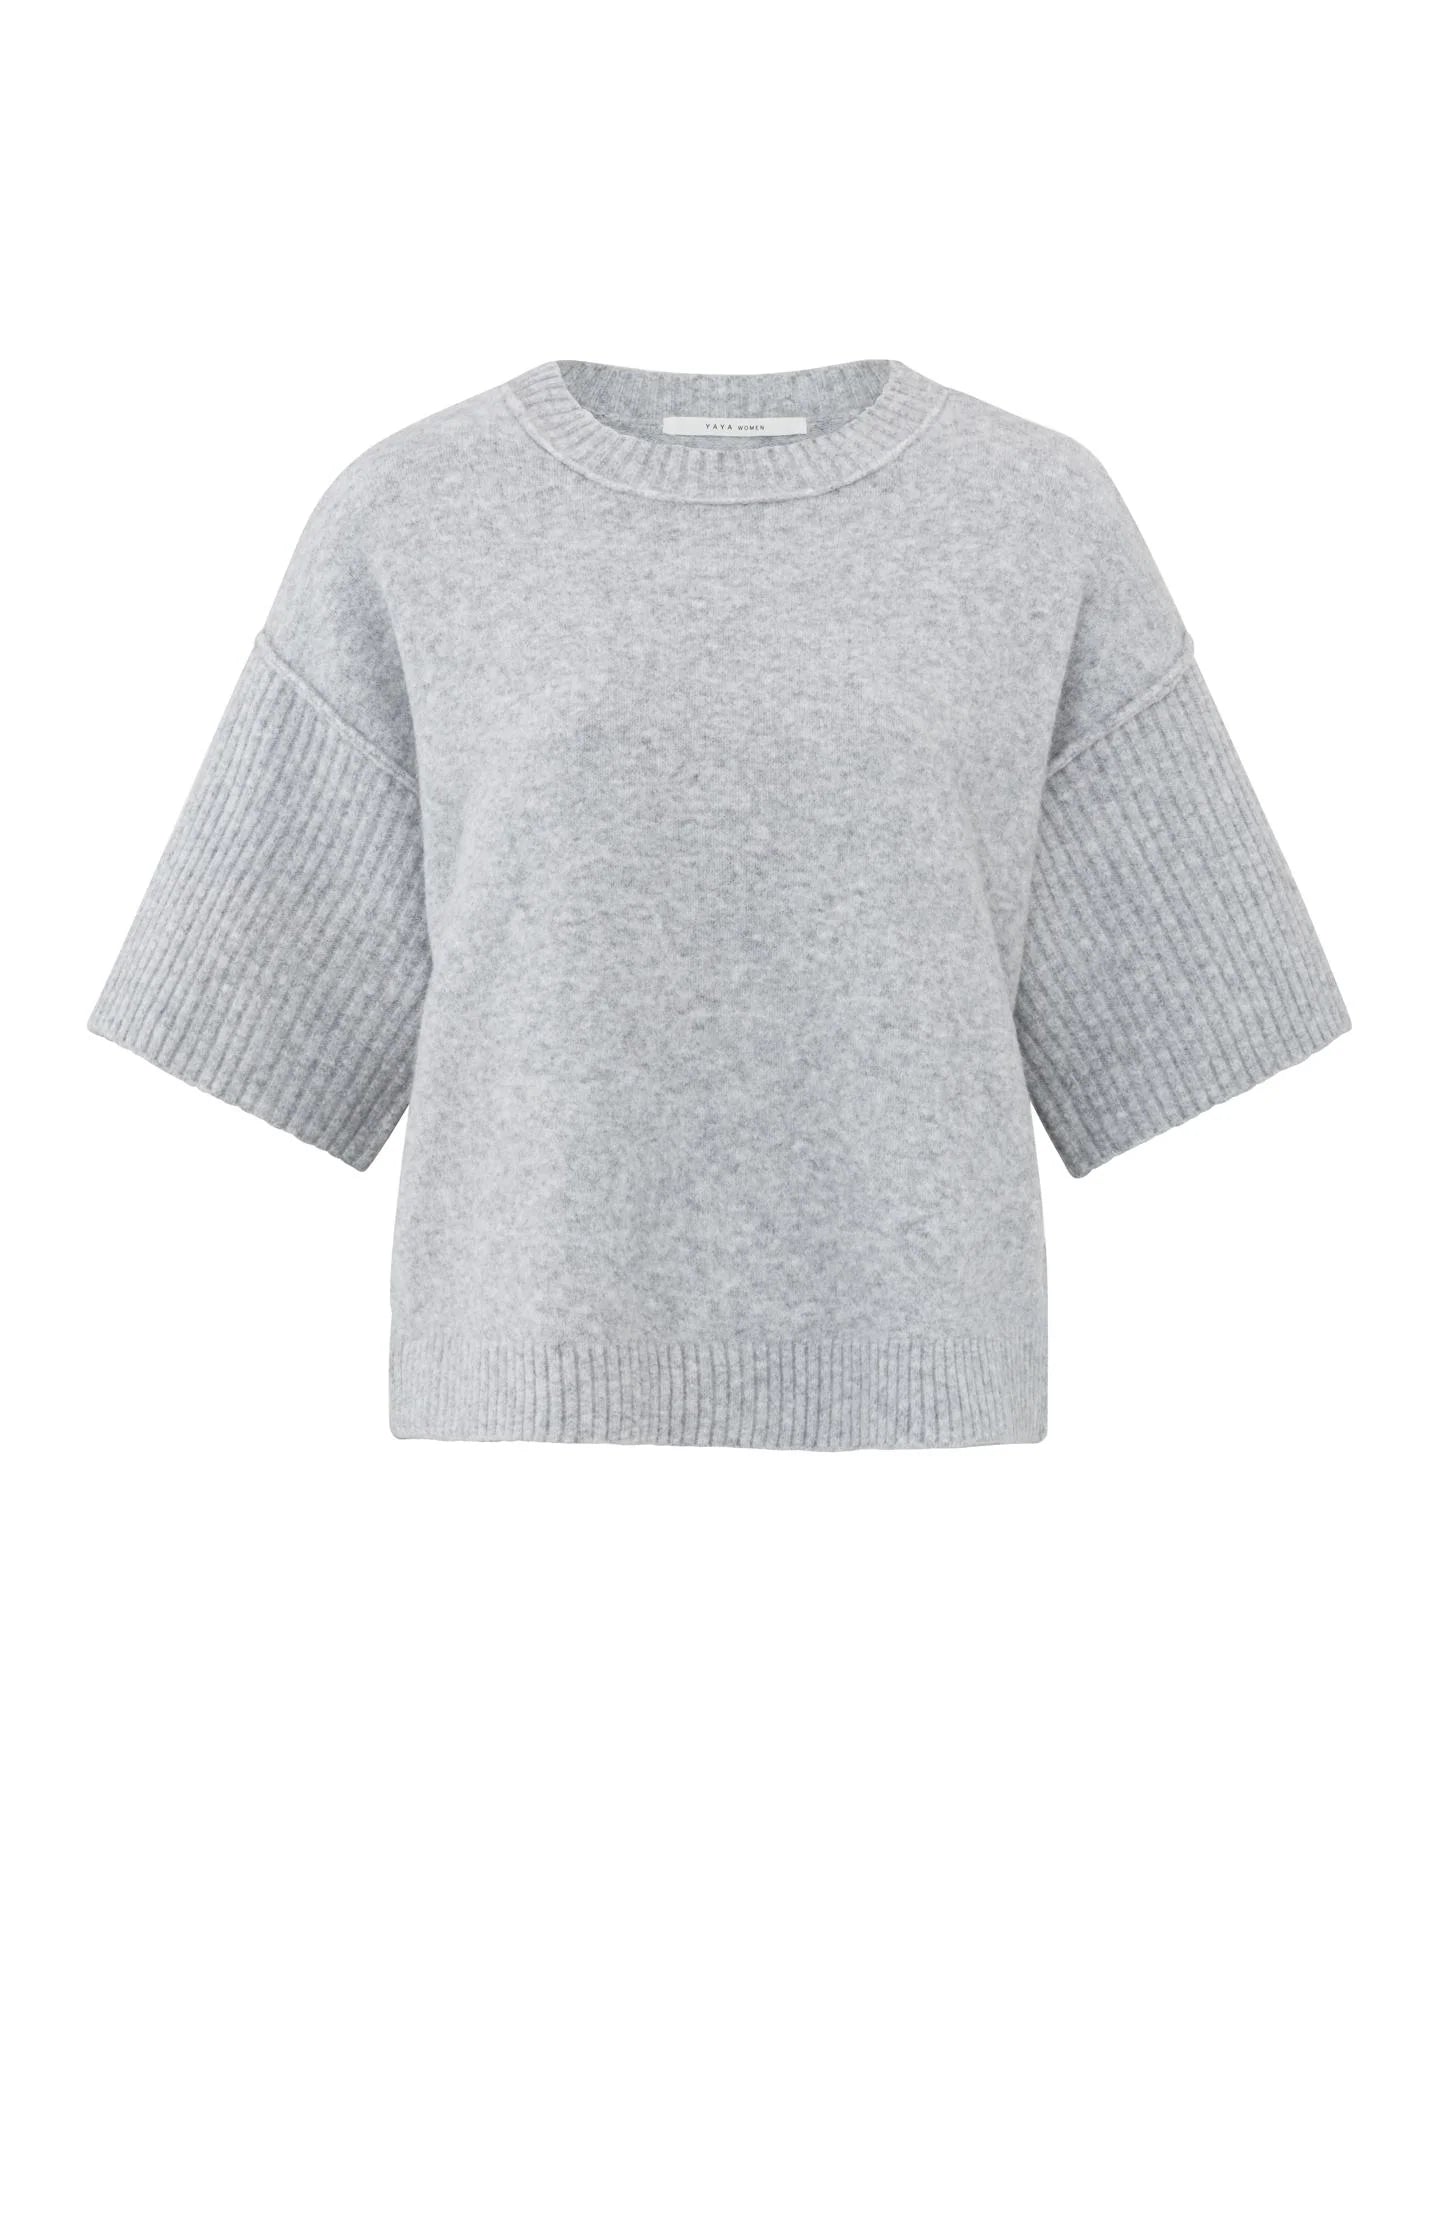 Boatneck Sweater in Grey Melange